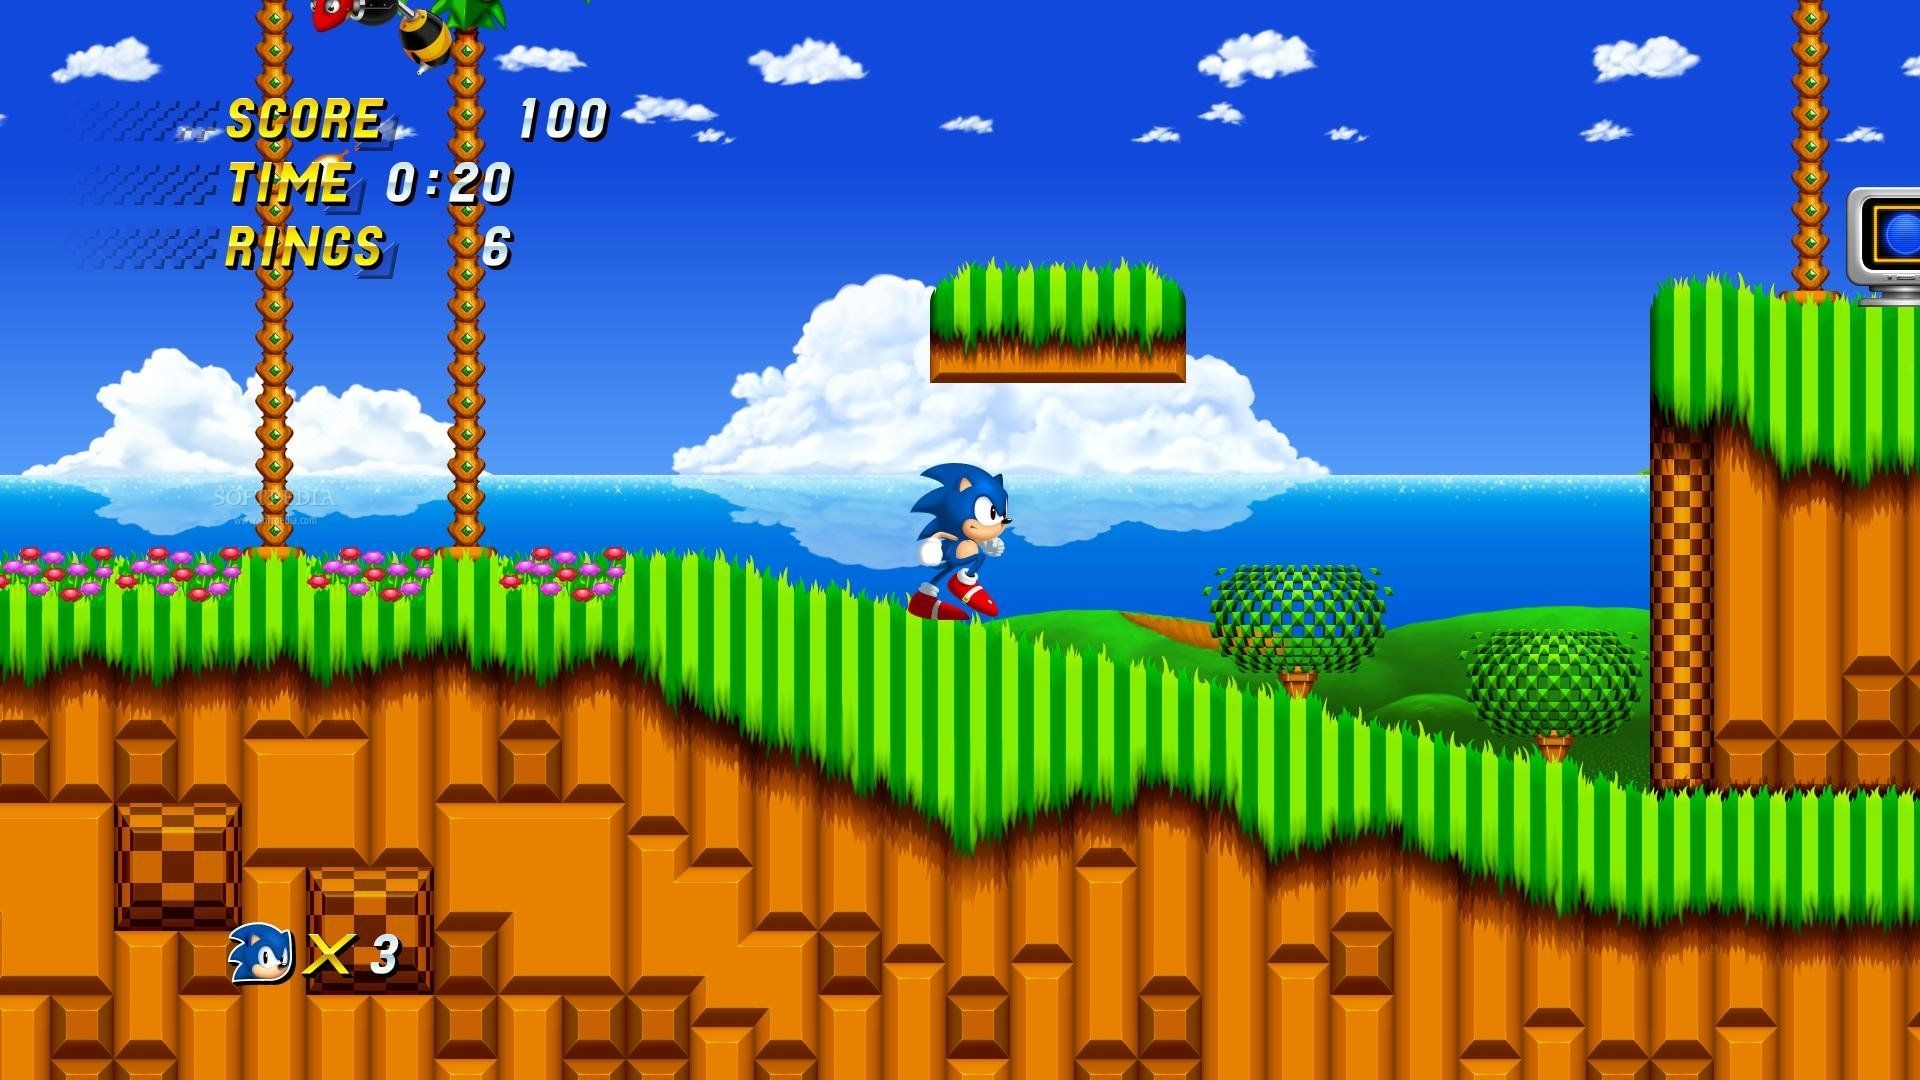 Redes sociais comemoram anúncio de novo jogo 2D do Sonic - Tecnologia -  Estado de Minas